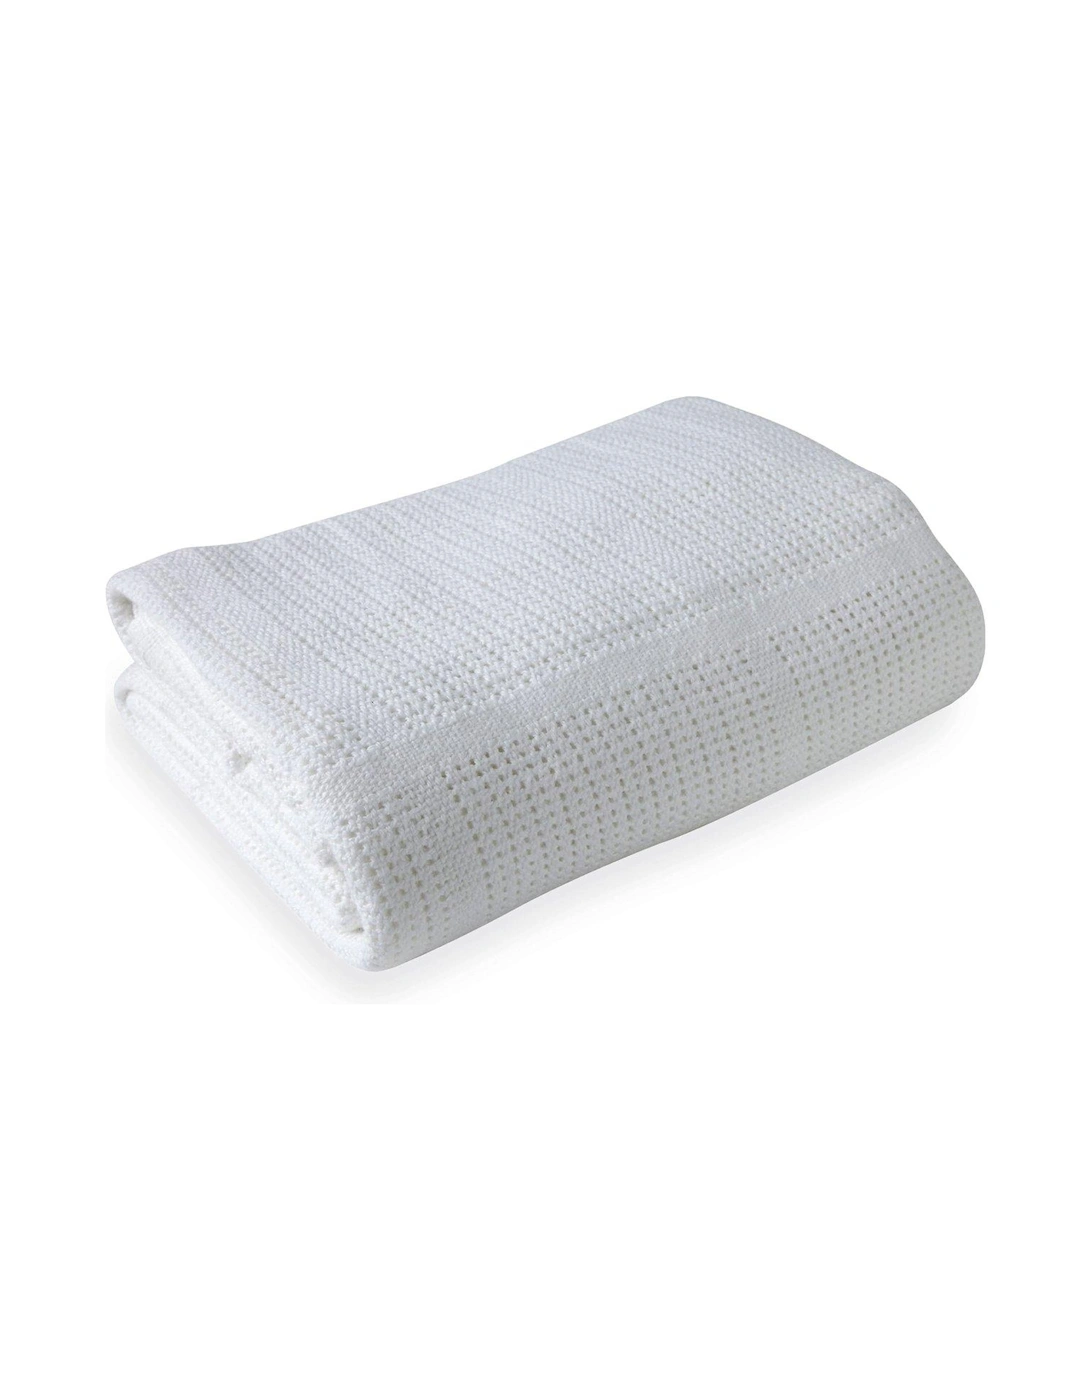 Cellular Pram Blanket - White, 3 of 2